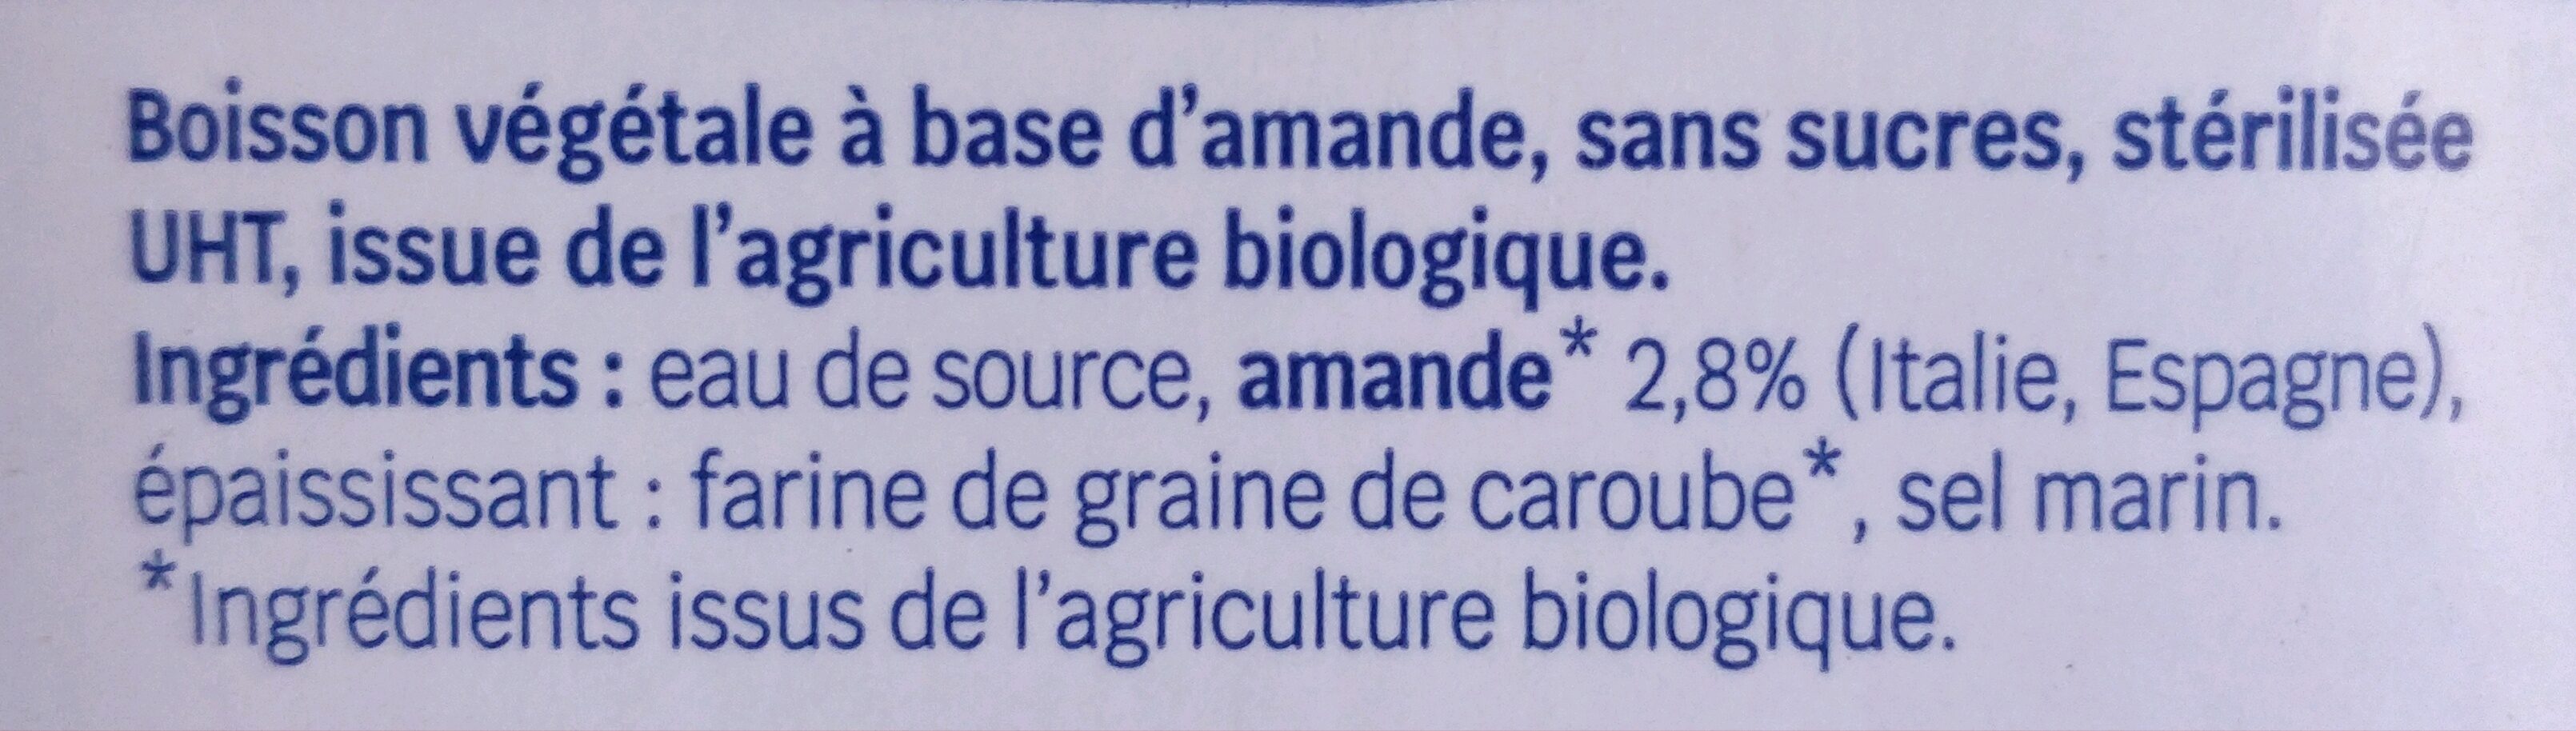 Boisson végétale - Amande sans sucre - Ingredients - fr